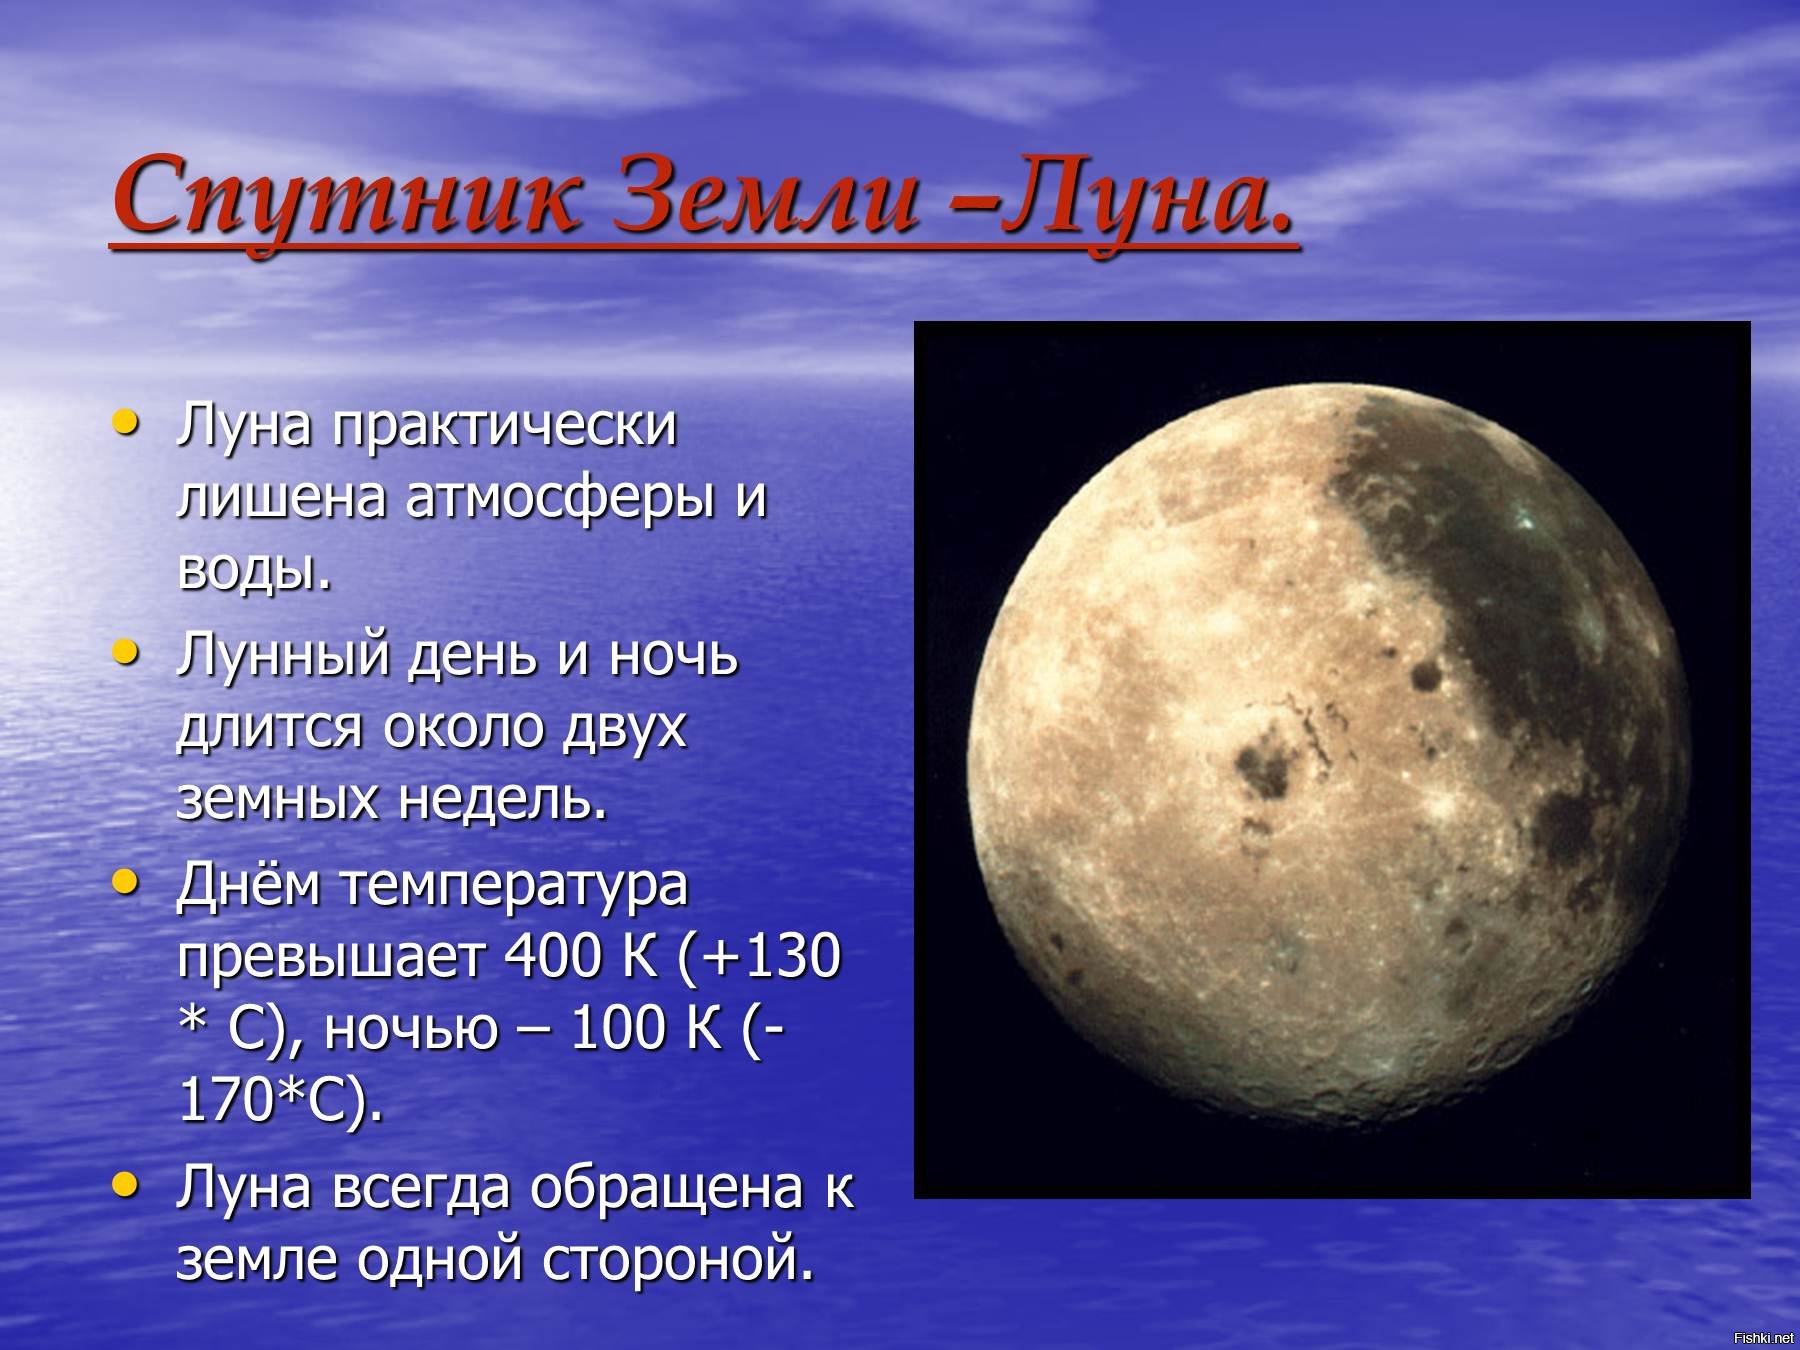 Луна это планета солнечной. Луна Спутник земли. Луна Спутник солнца. Луна Планета солнечной системы. Солнечная система Луна Спутник земли.